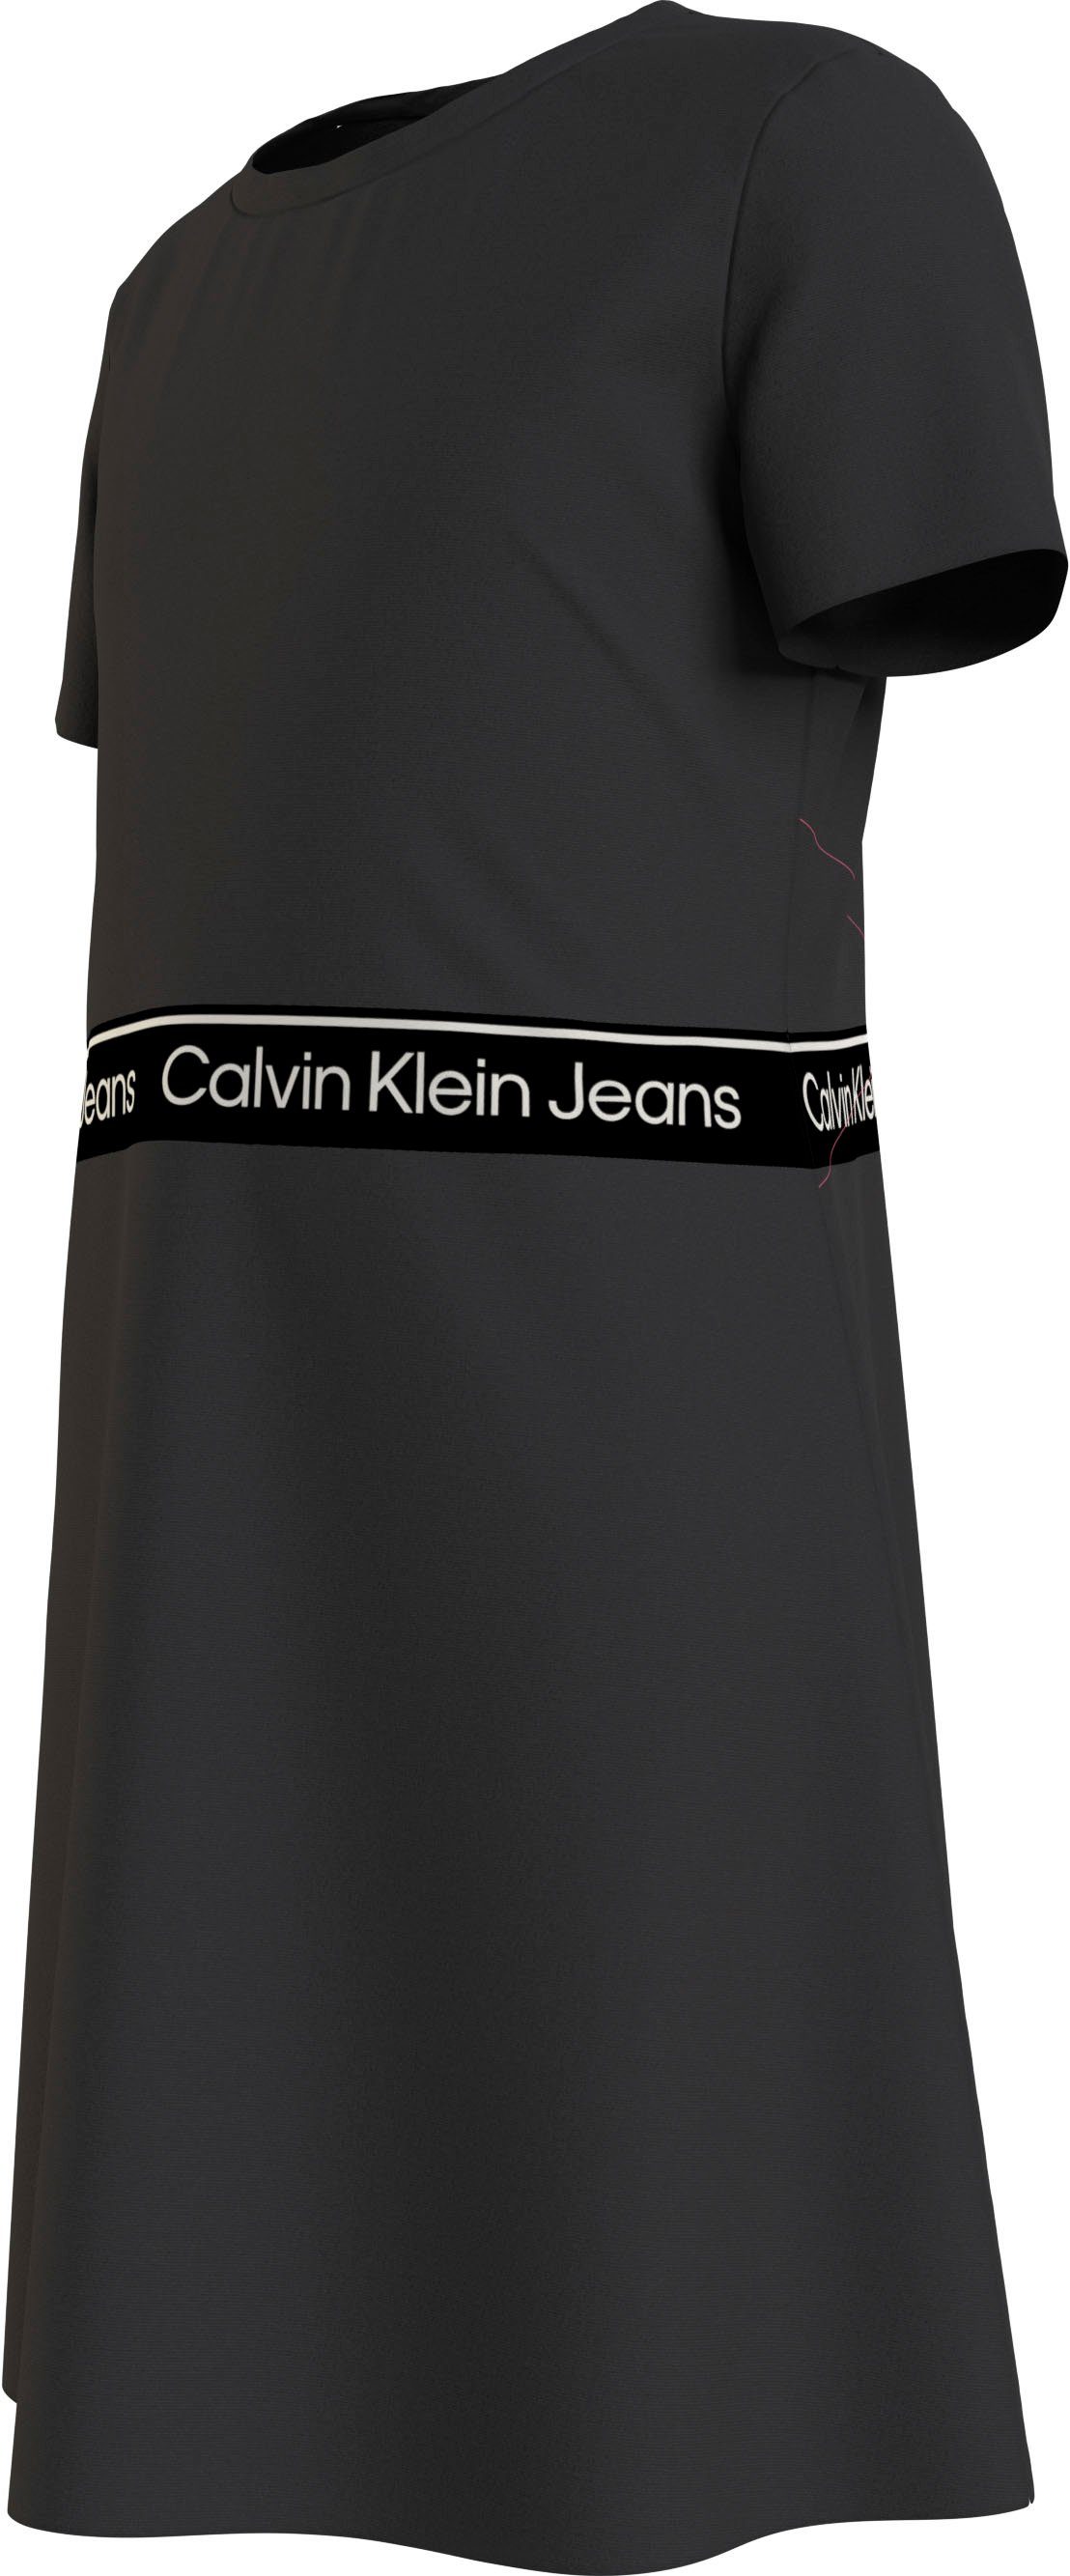 Calvin Klein Jeans Skaterkleid SS TAPE Ck LOGO Black DRESS PUNTO